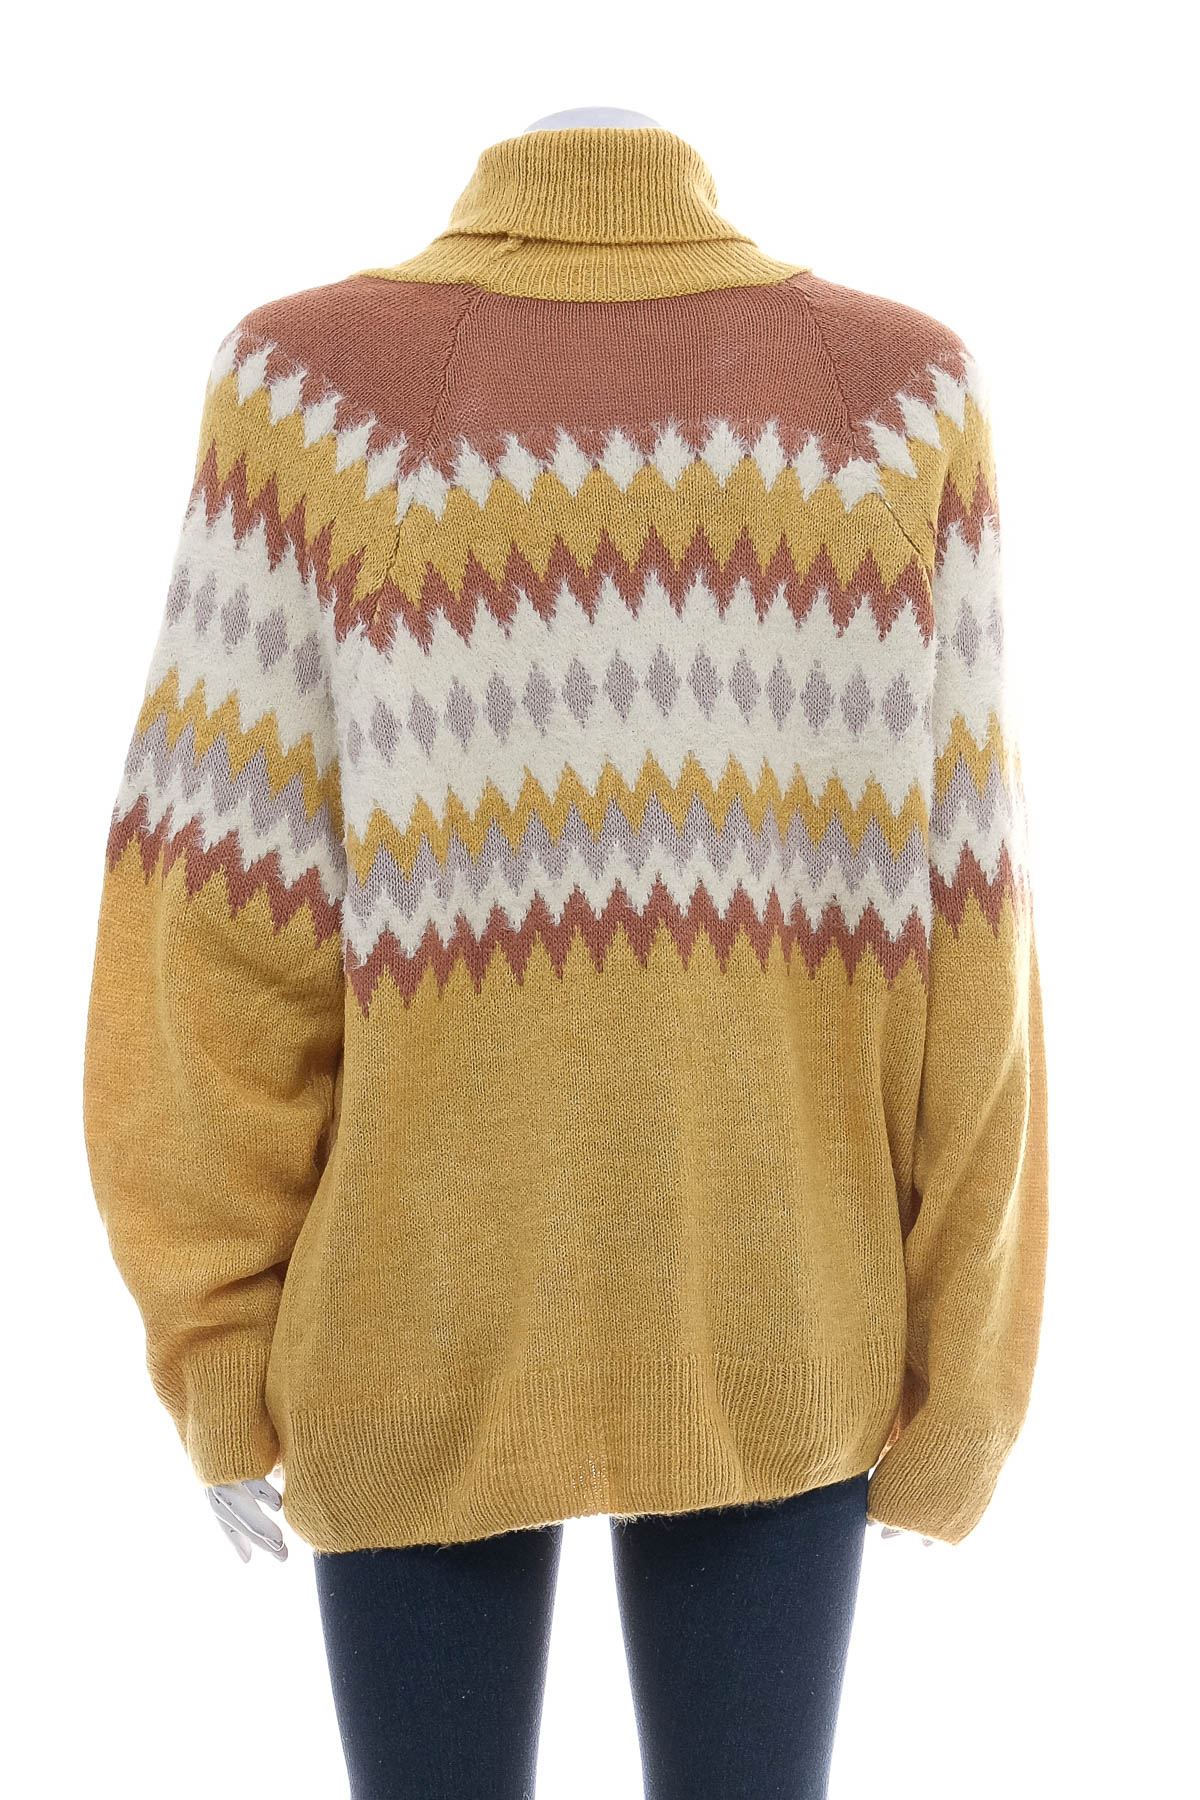 Women's sweater - NKD - 1